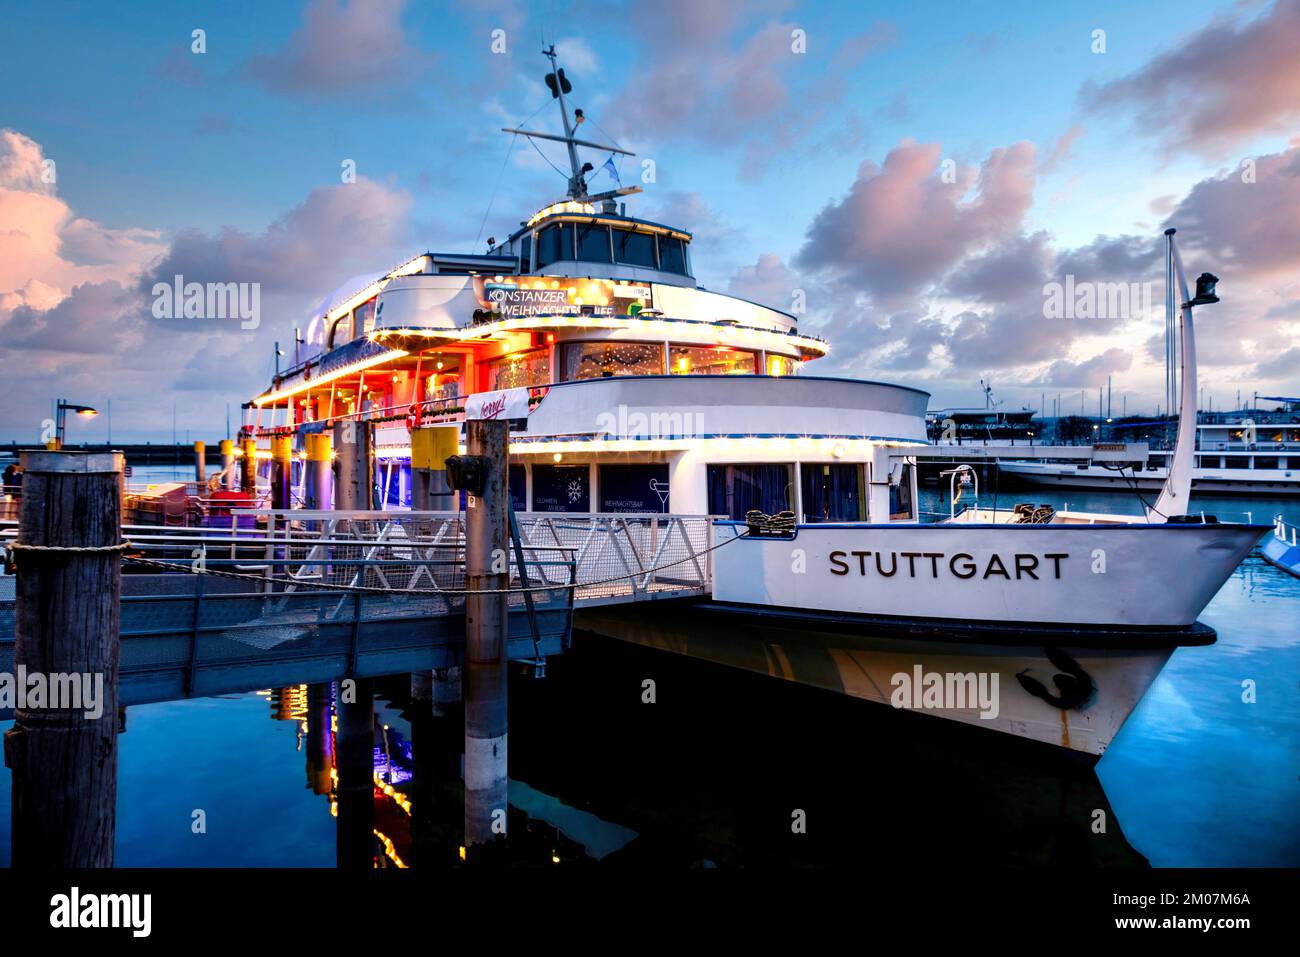 Costanza, Germania. La nave di Natale illuminata con bar panoramico a 360° sulla riva del Lago di Costanza. Konstanz, Germania. Das beleuchtete Weihnacht Foto Stock